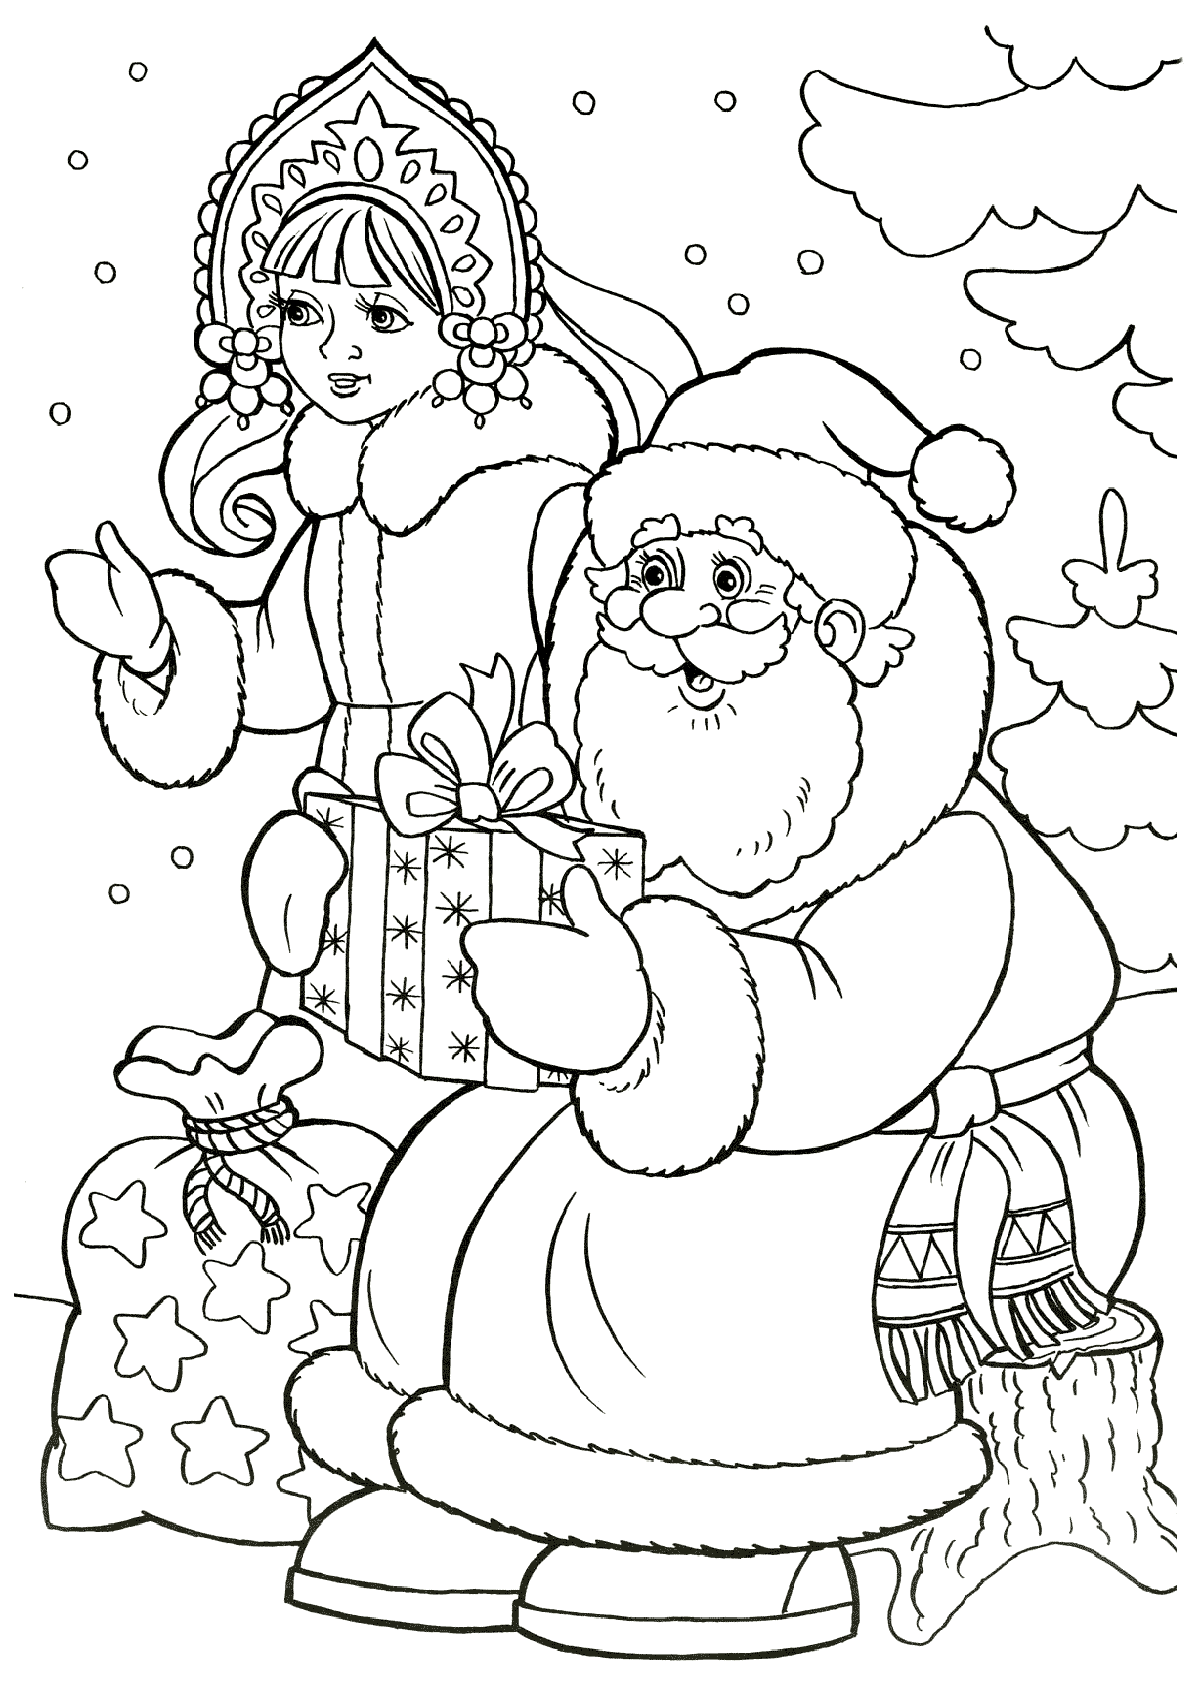 Дед Мороз и Снегурочка на Новый год 2018